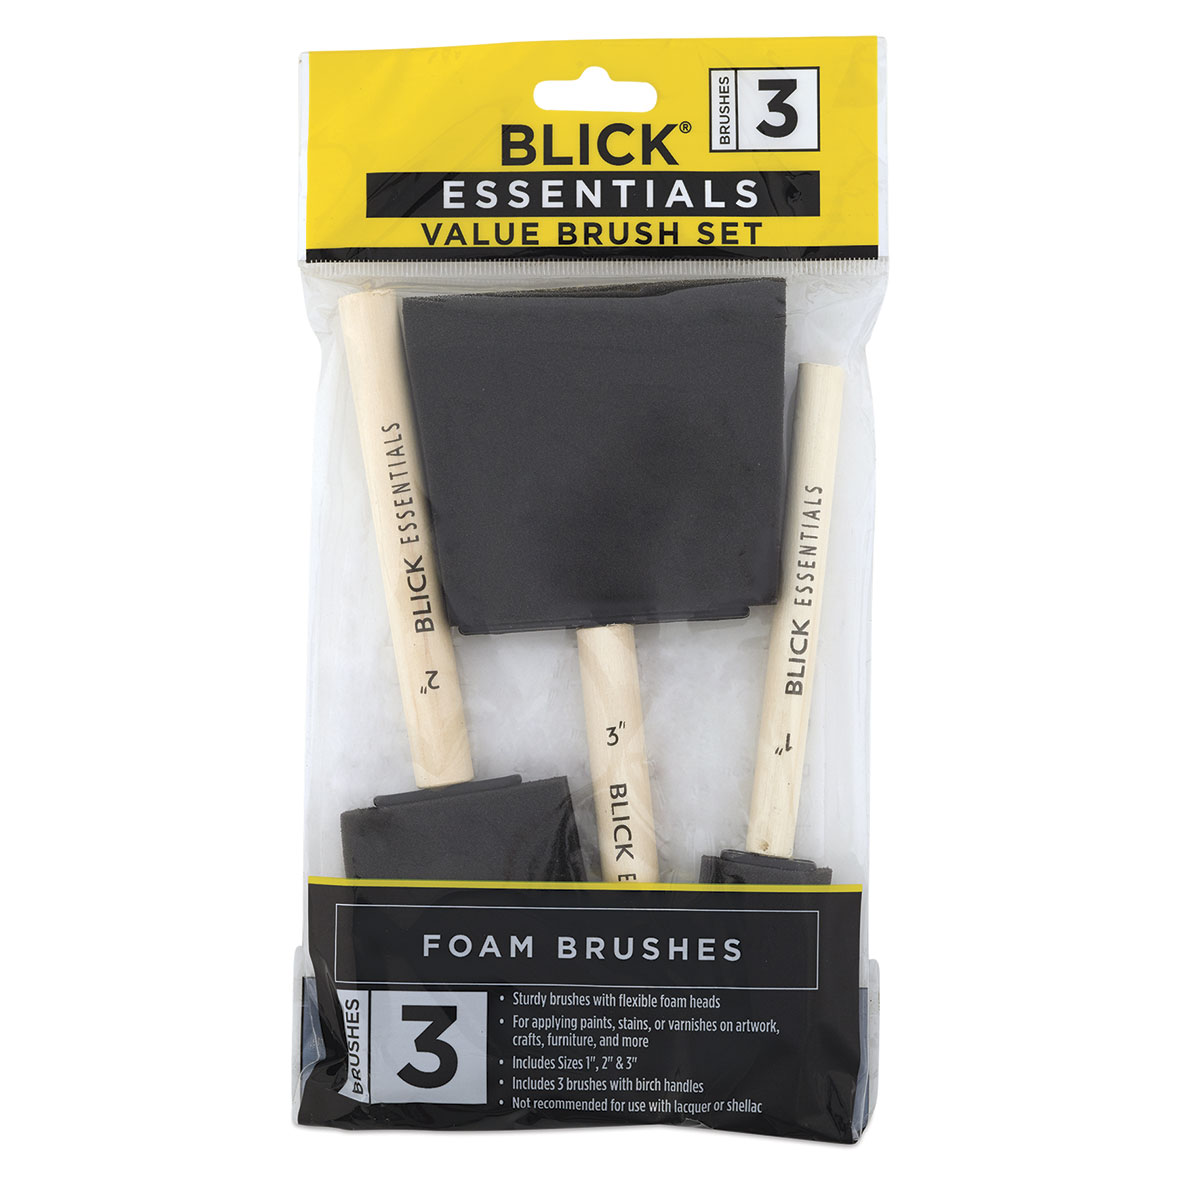 Blick Essentials Craft Value Brush Set